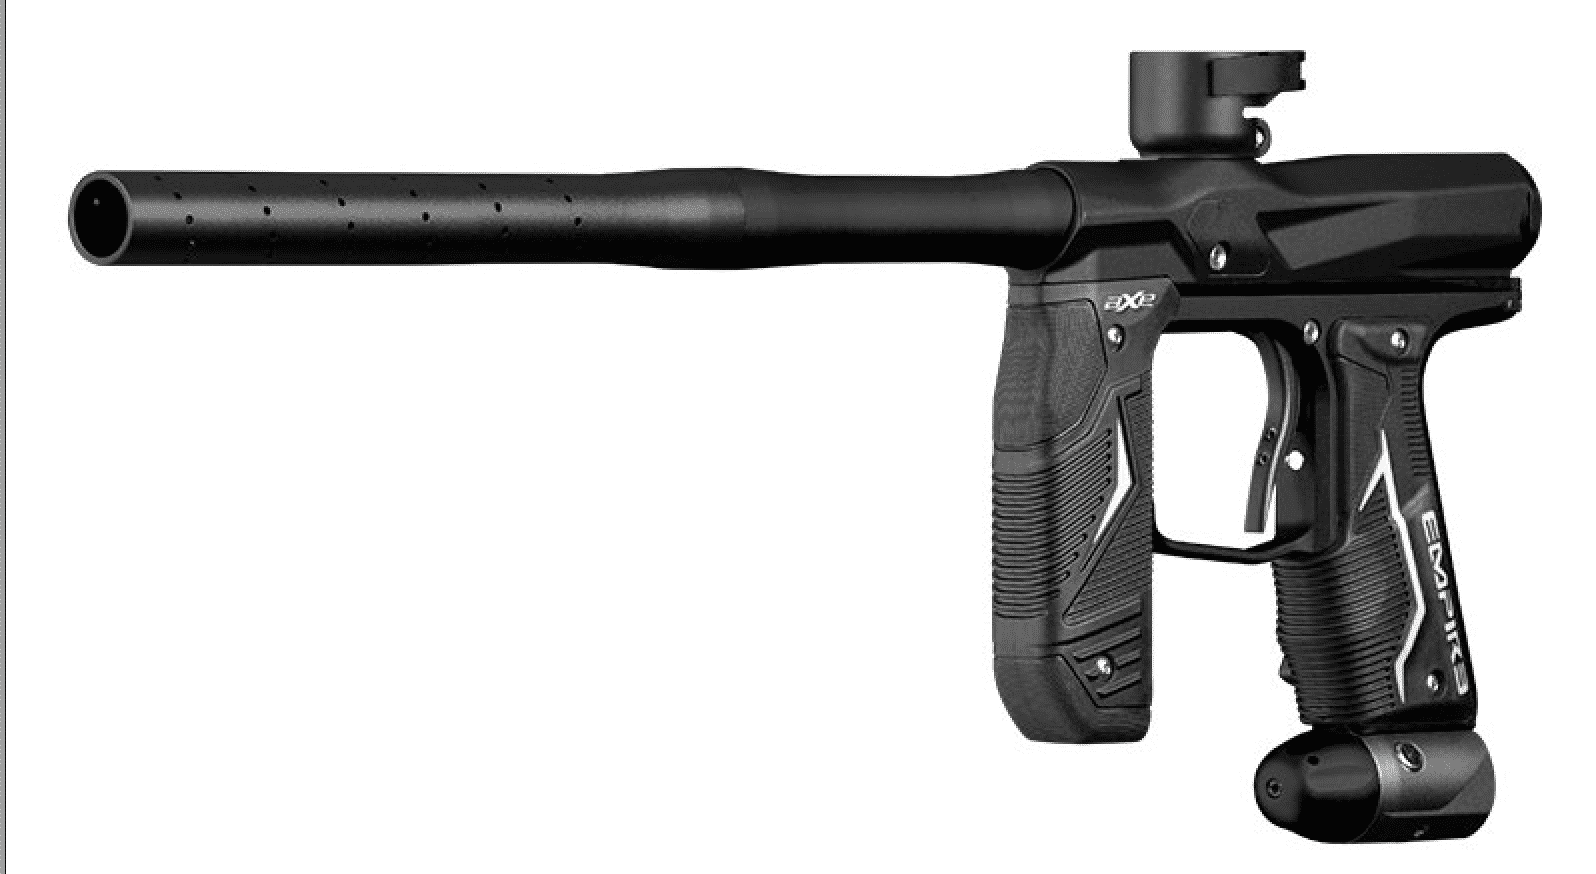 Empire Axe 2.0 Paintball Gun Review